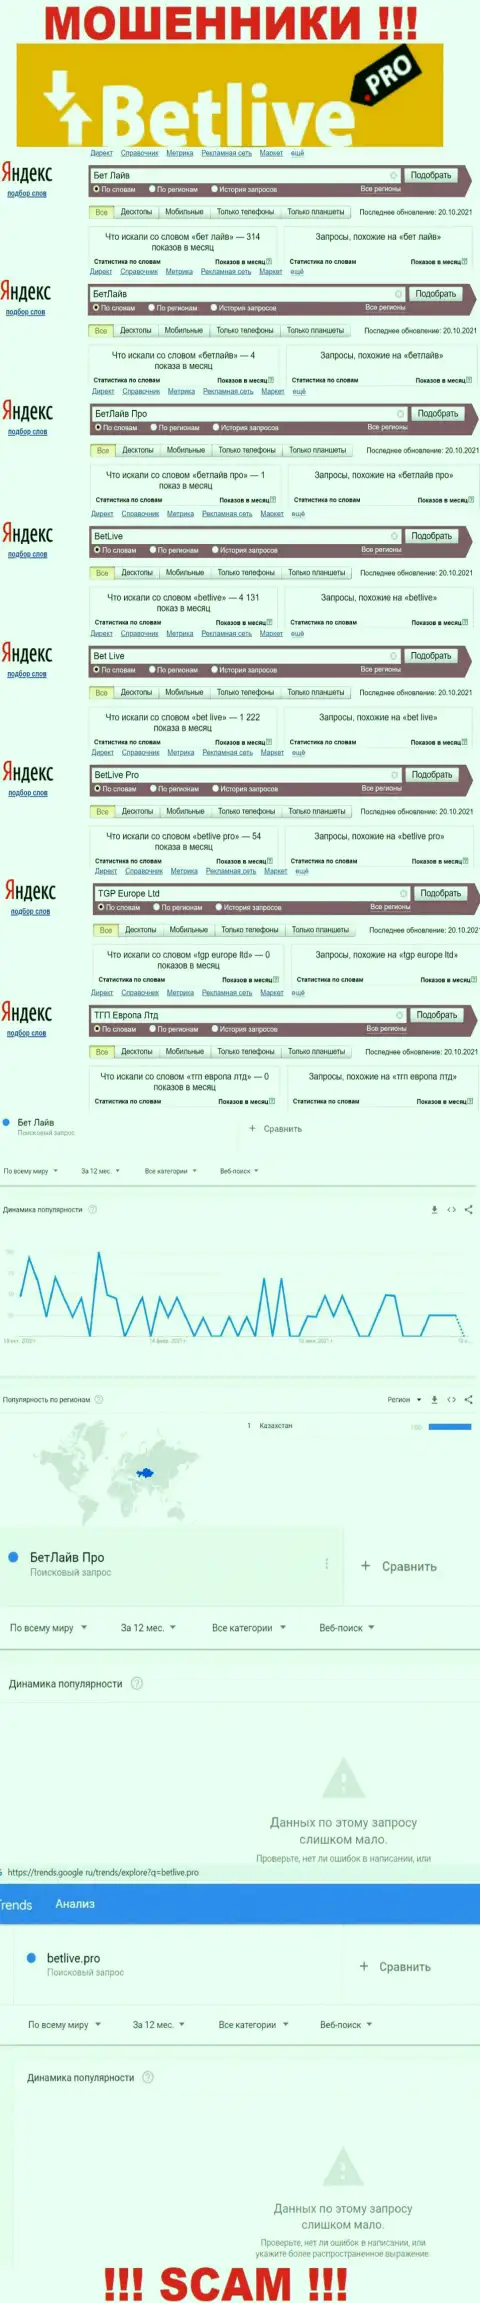 Статистические показатели о запросах в поисковиках всемирной сети internet информации об конторе BetLive